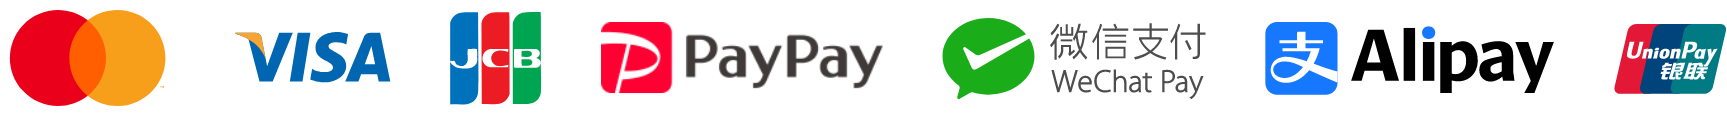 クレジットカード mastercard visa JCB PayPay WeChatPay AliPay UnionPay